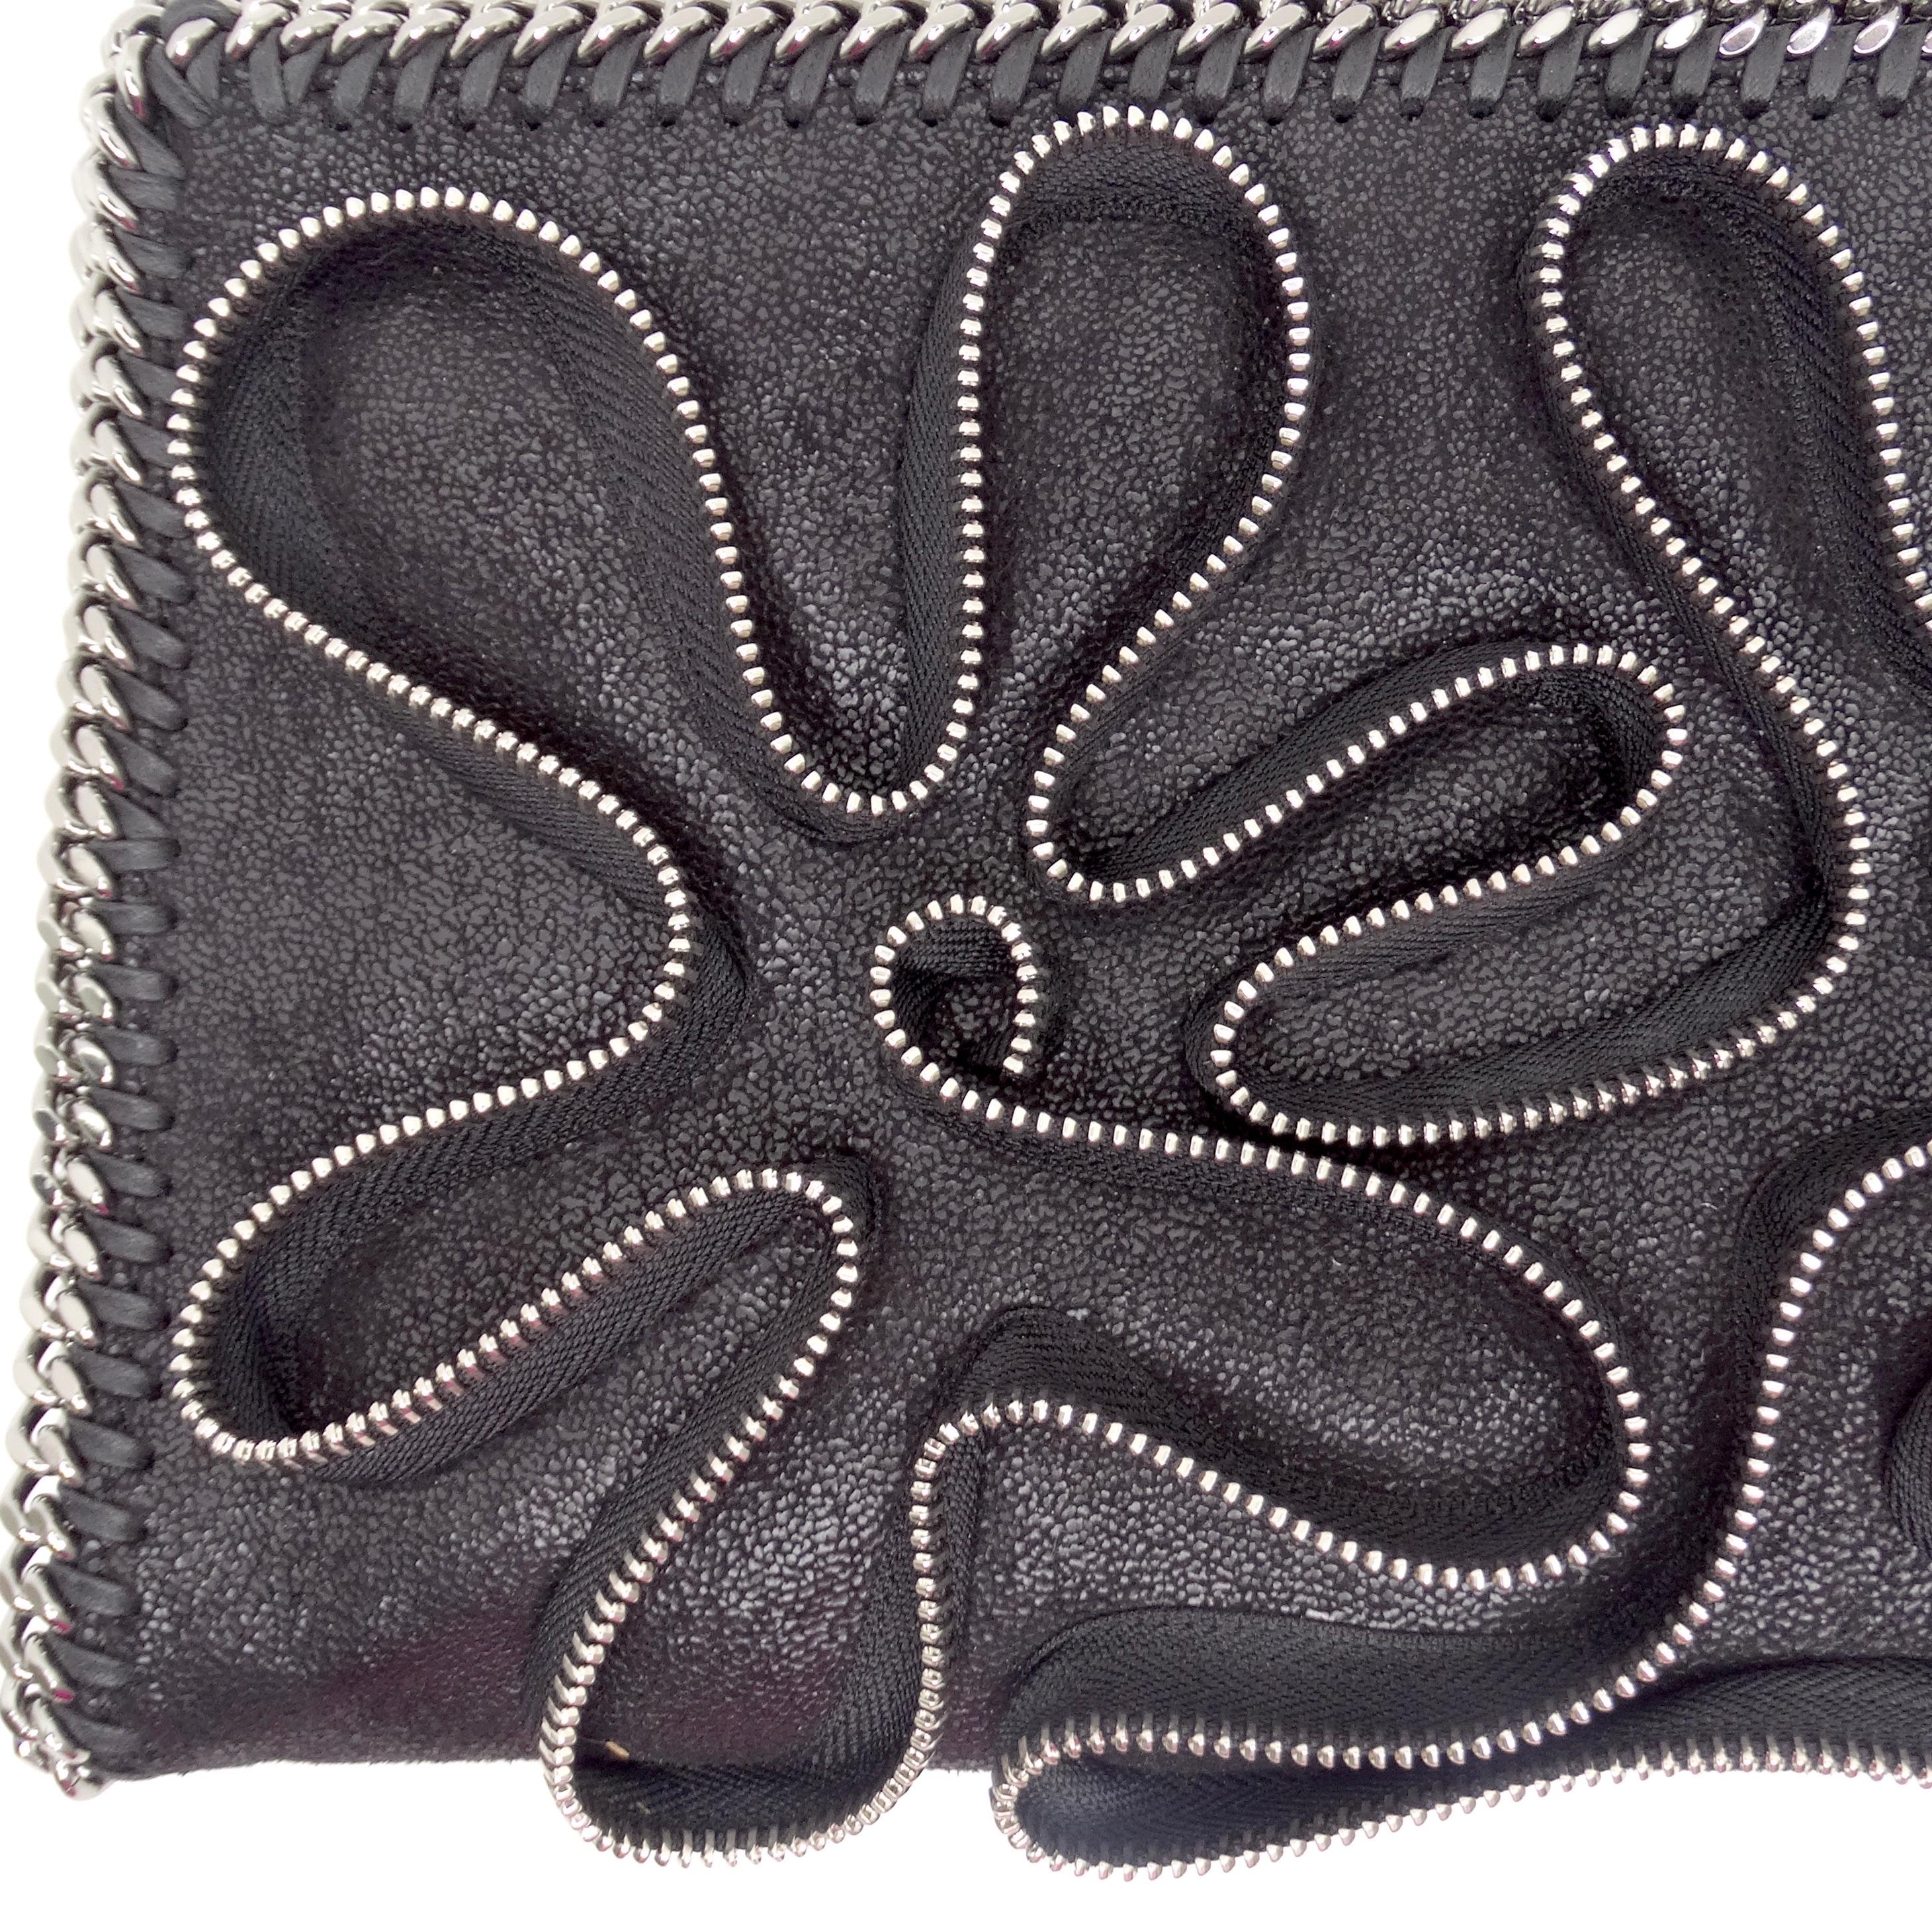 Die Stella McCartney Falabella Zipper Trim Fold Over Clutch ist ein umwerfendes und einzigartiges Accessoire, das mühelos kantiges Flair mit zeitloser Eleganz verbindet. Diese aus luxuriösem schwarzem Kunstleder gefertigte Clutch zum Umklappen